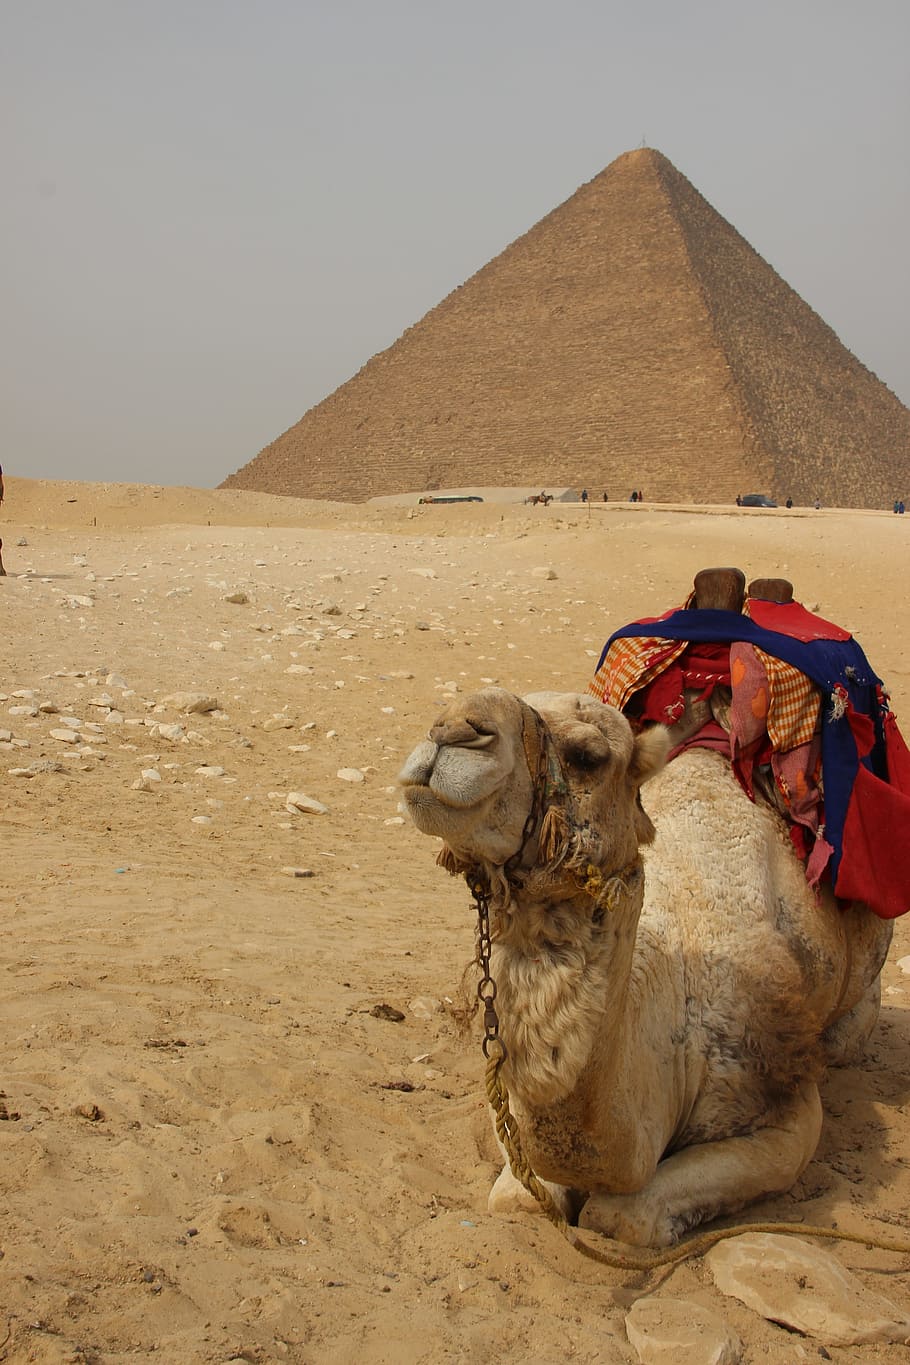 茶色, ラクダ, 横になっている, 砂, エジプト, アフリカ, ピラミッド, 旅行, 砂漠, サハラ砂漠